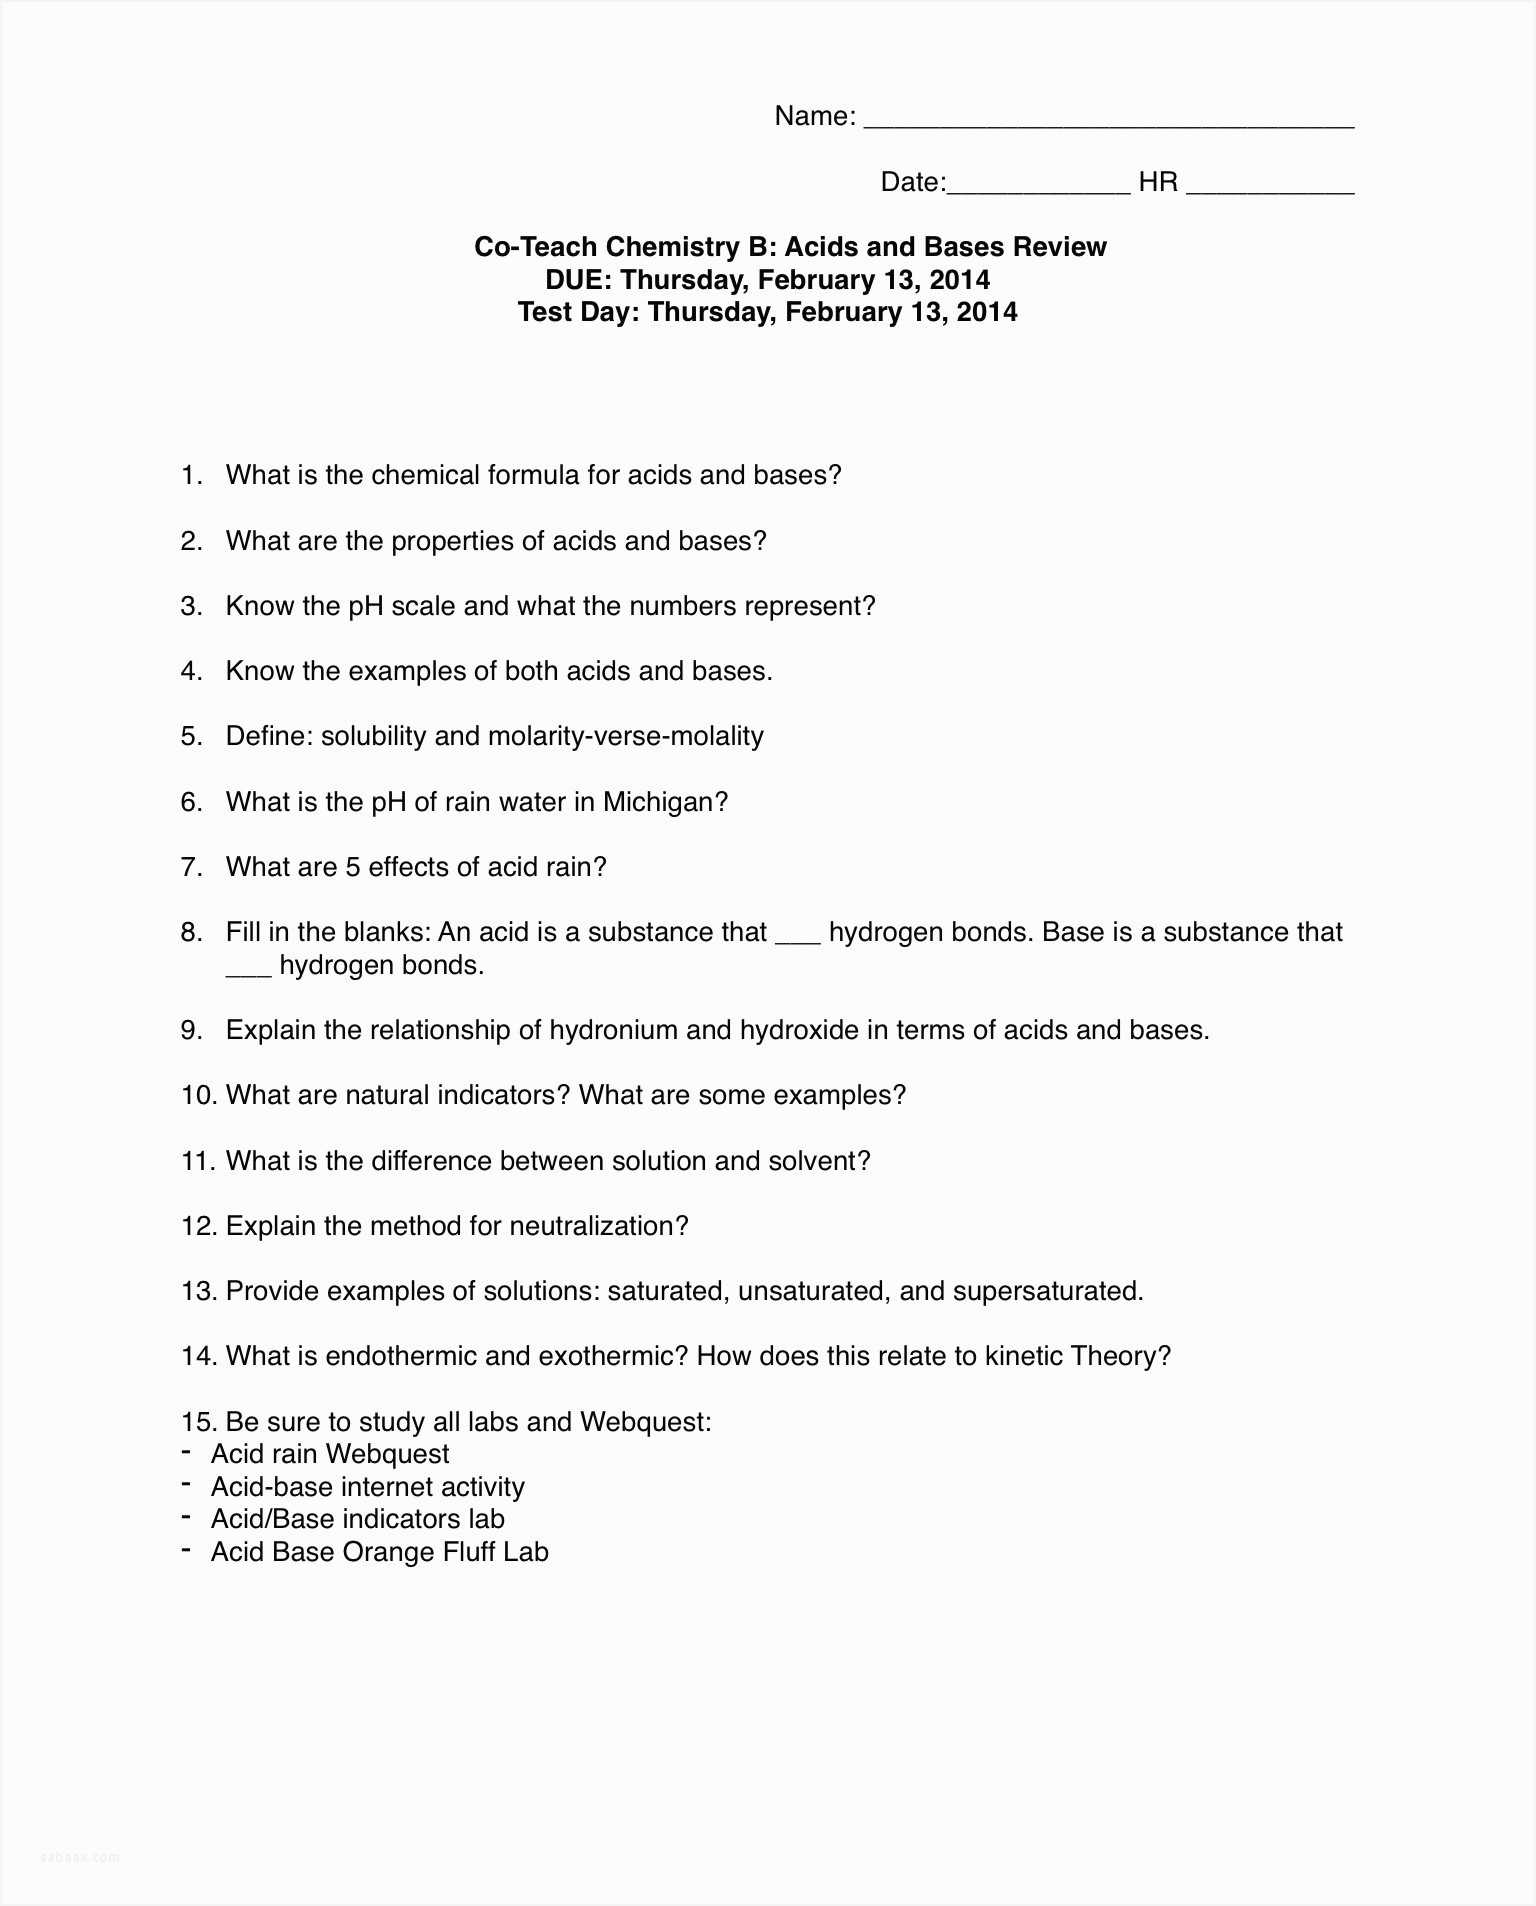 Acids and Bases Worksheet Answers together with Acids and Bases Worksheet Key Image Collections Worksheet for Kids